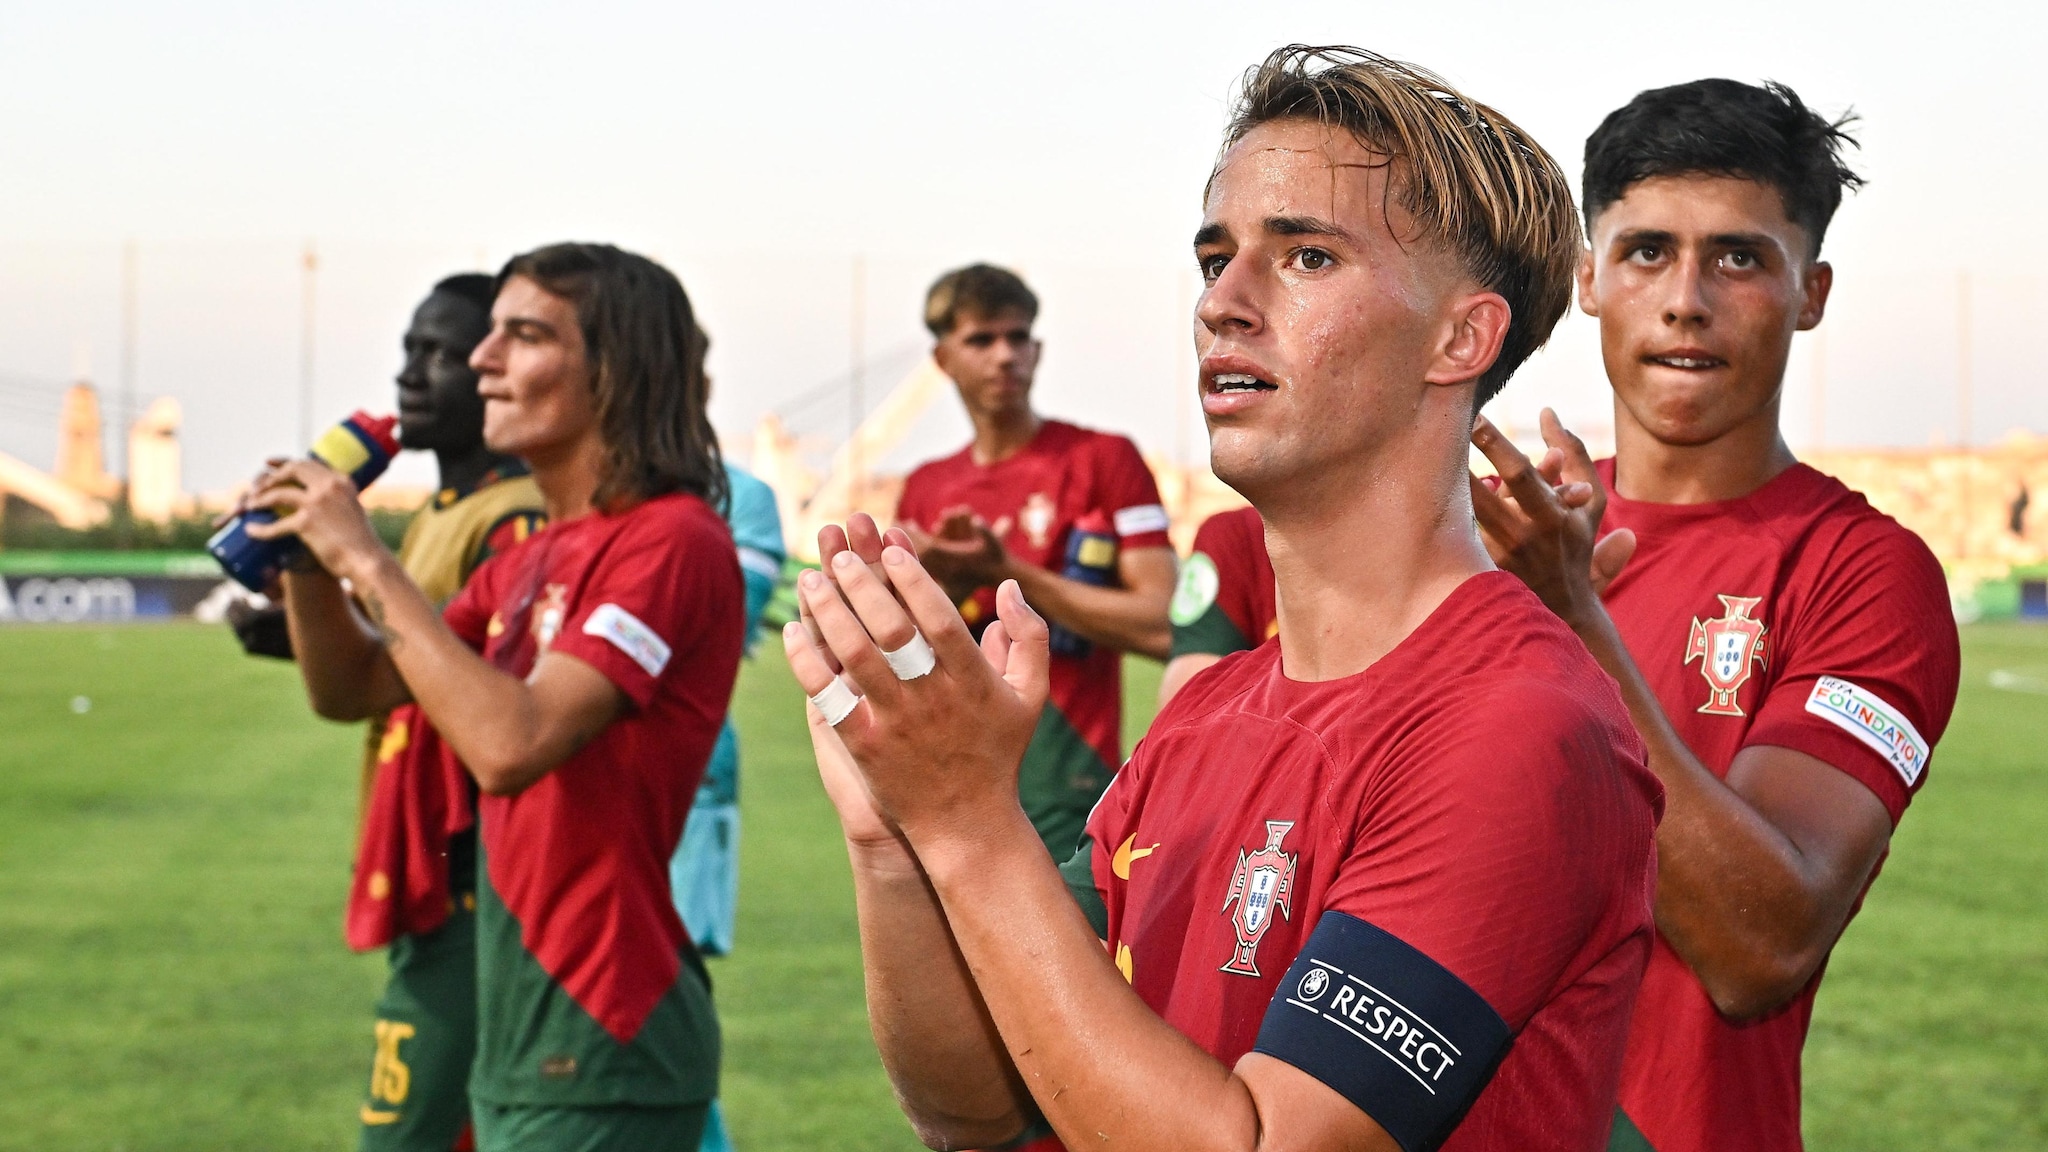 Europeu sub-19: Portugal goleia Itália por 5-1 e está perto das  meias-finais